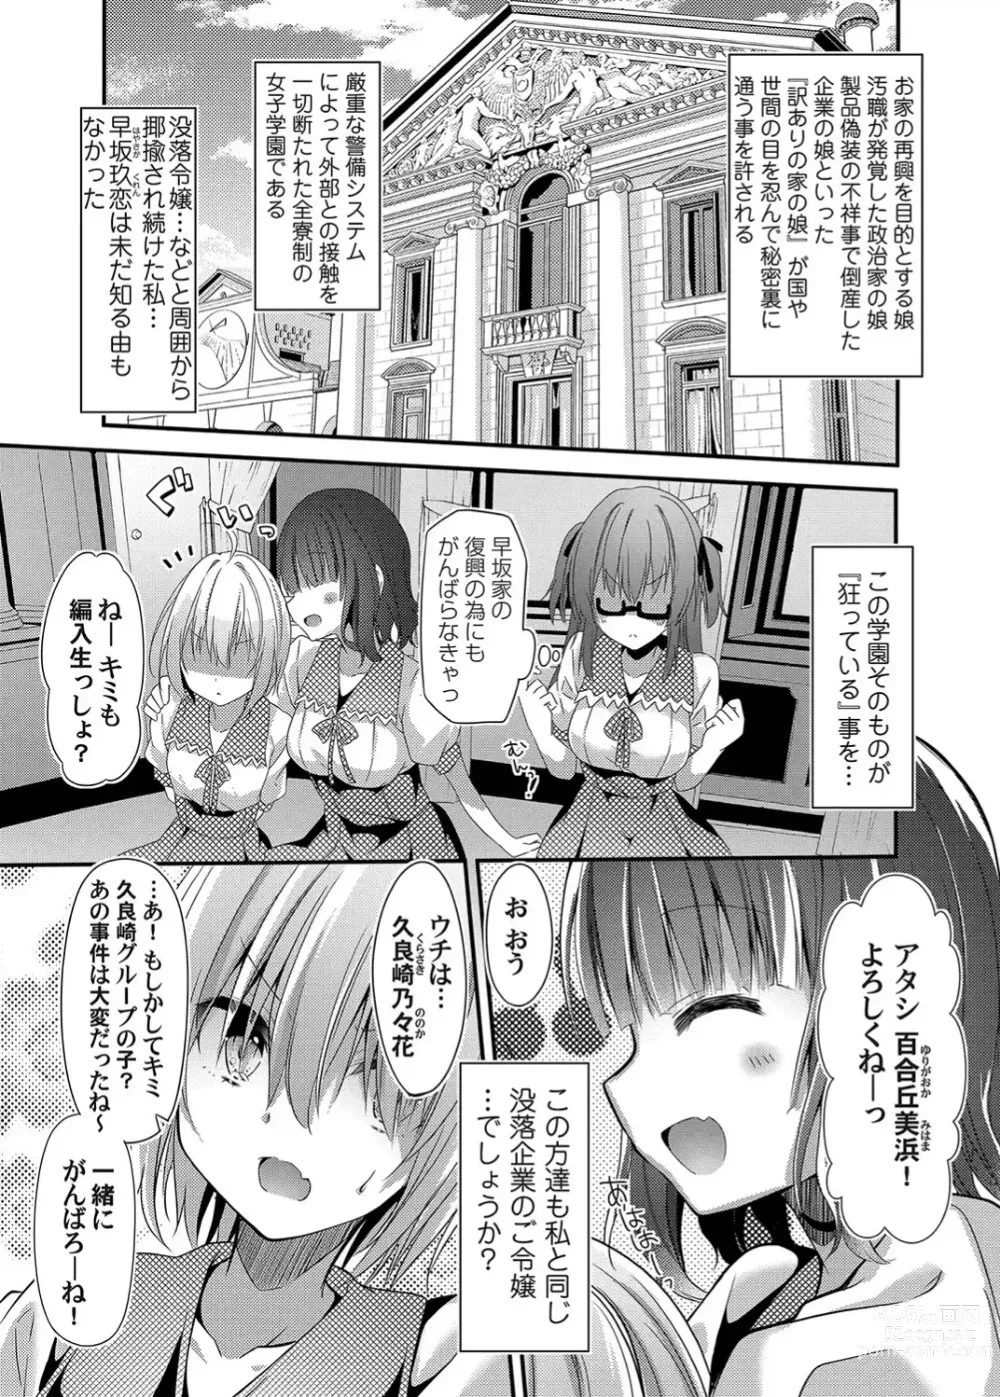 Page 5 of doujinshi Botsuraku Lady no Hakoniwa Showtime